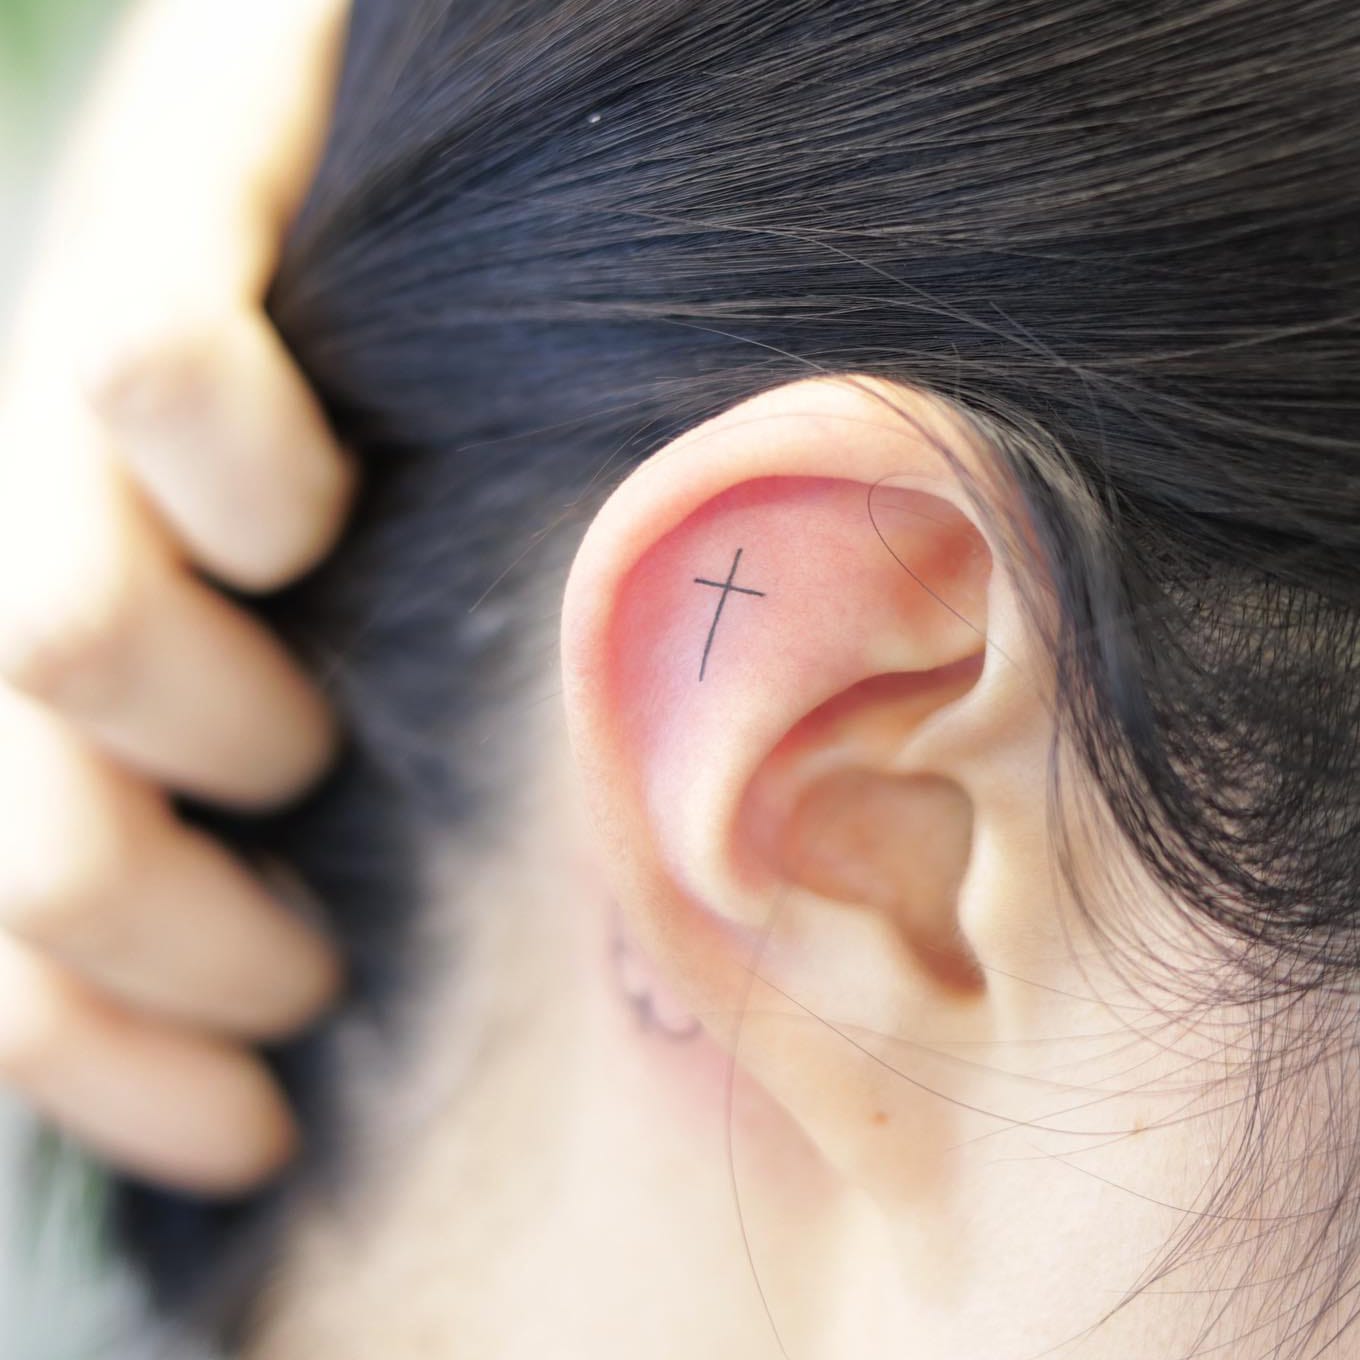 Small cross tattoo on ear